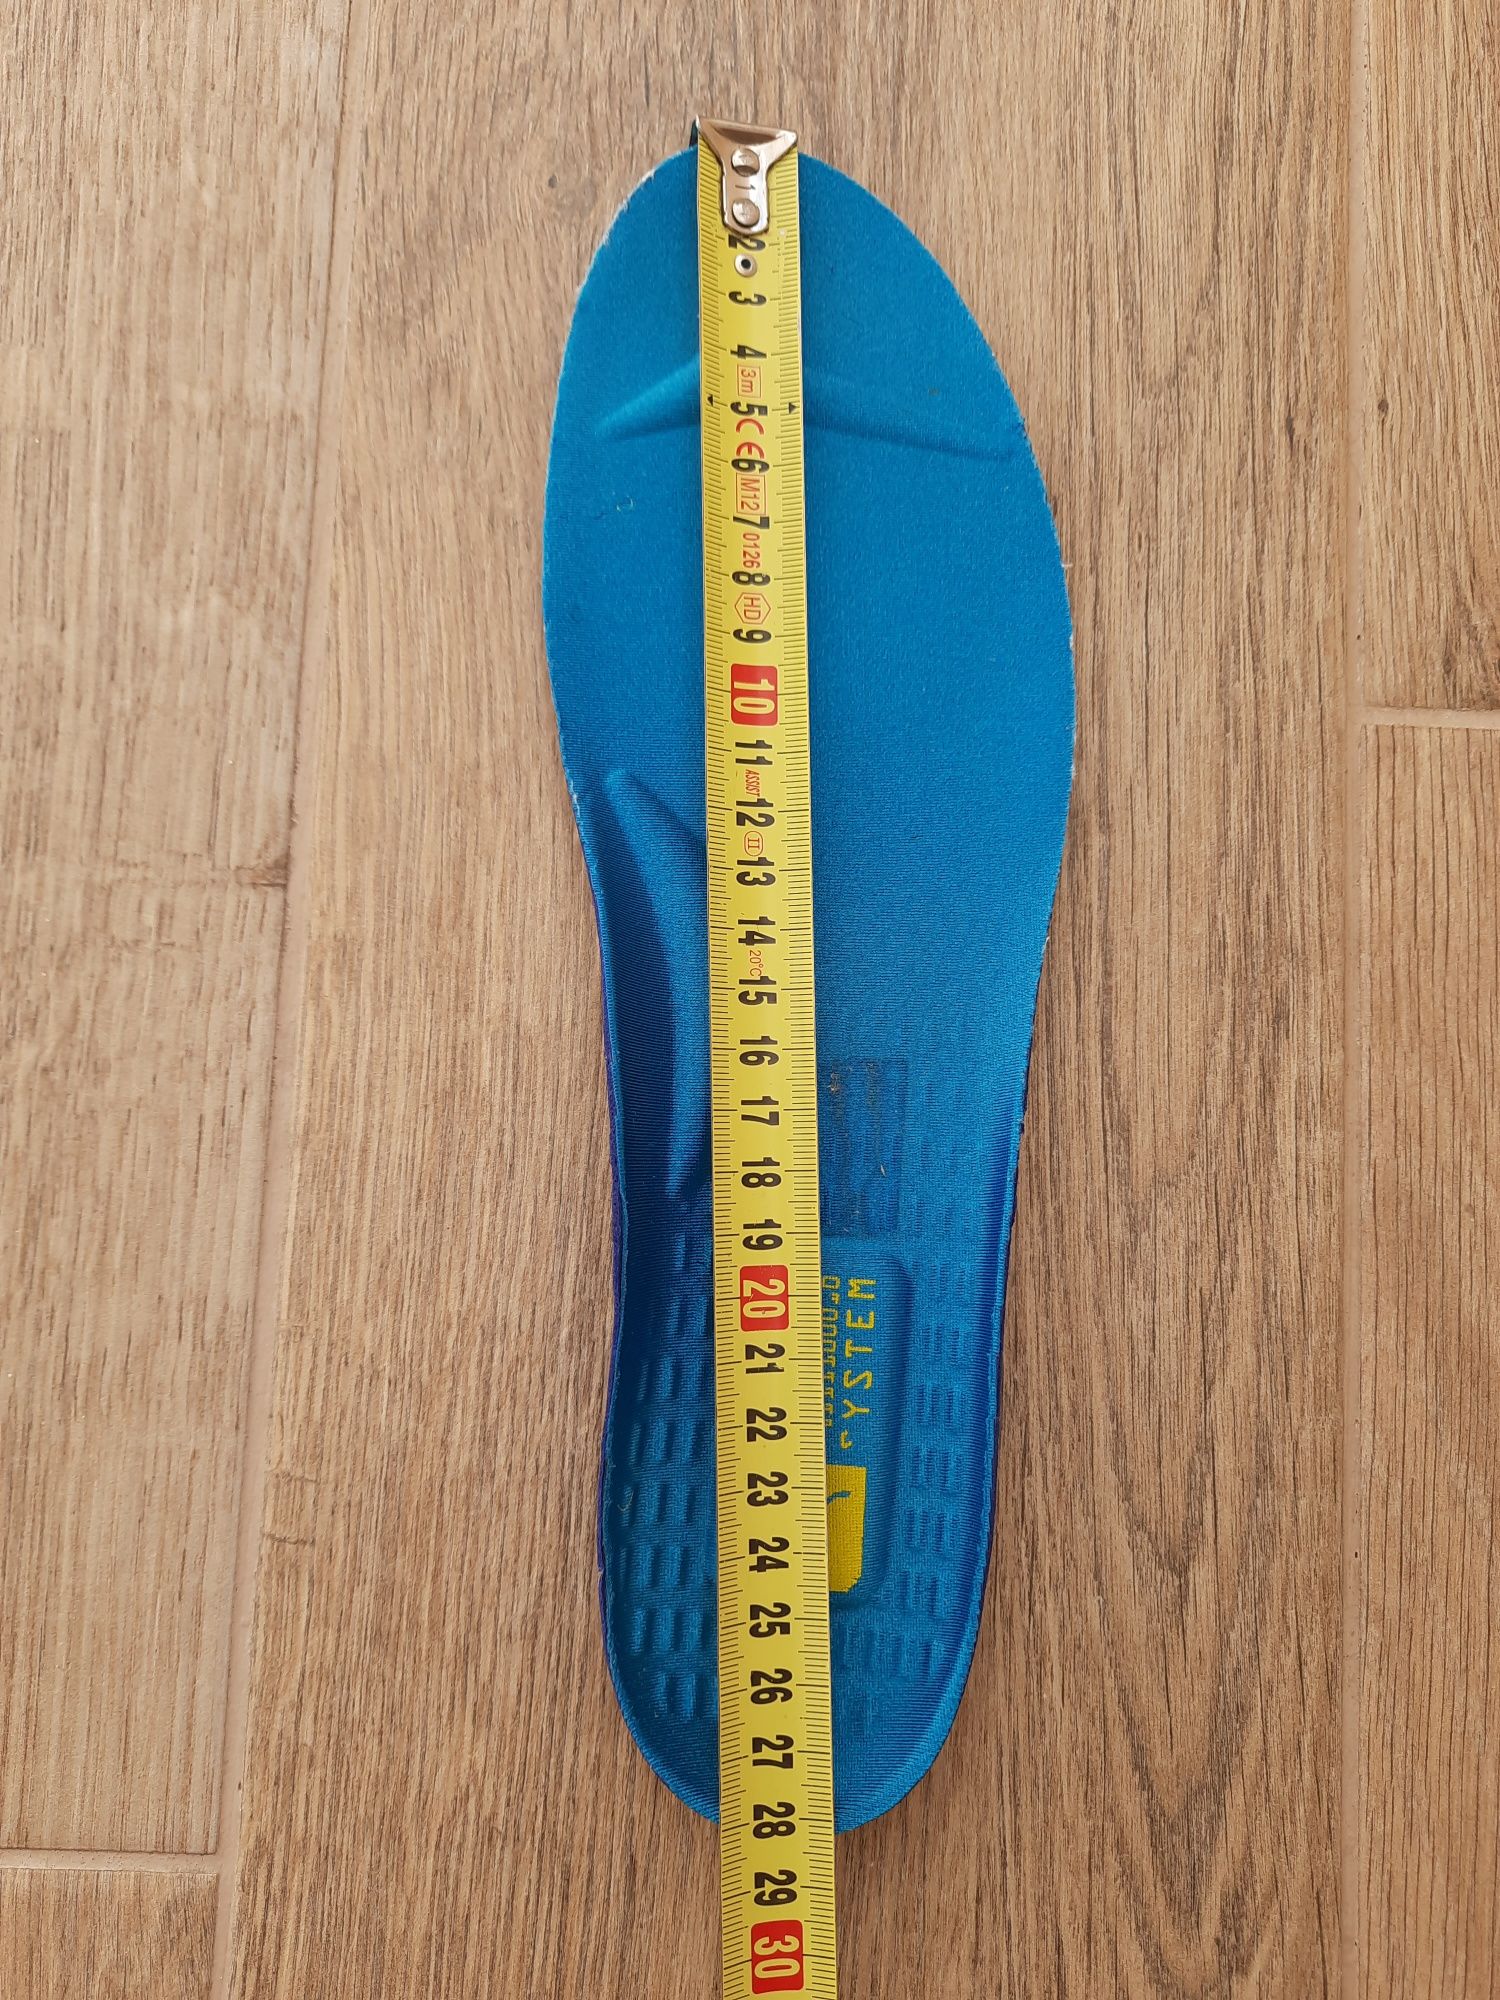 Кроссовки Puma RS р 43 на 42 (28 см) ц 1200 гр ориг. отл.сост